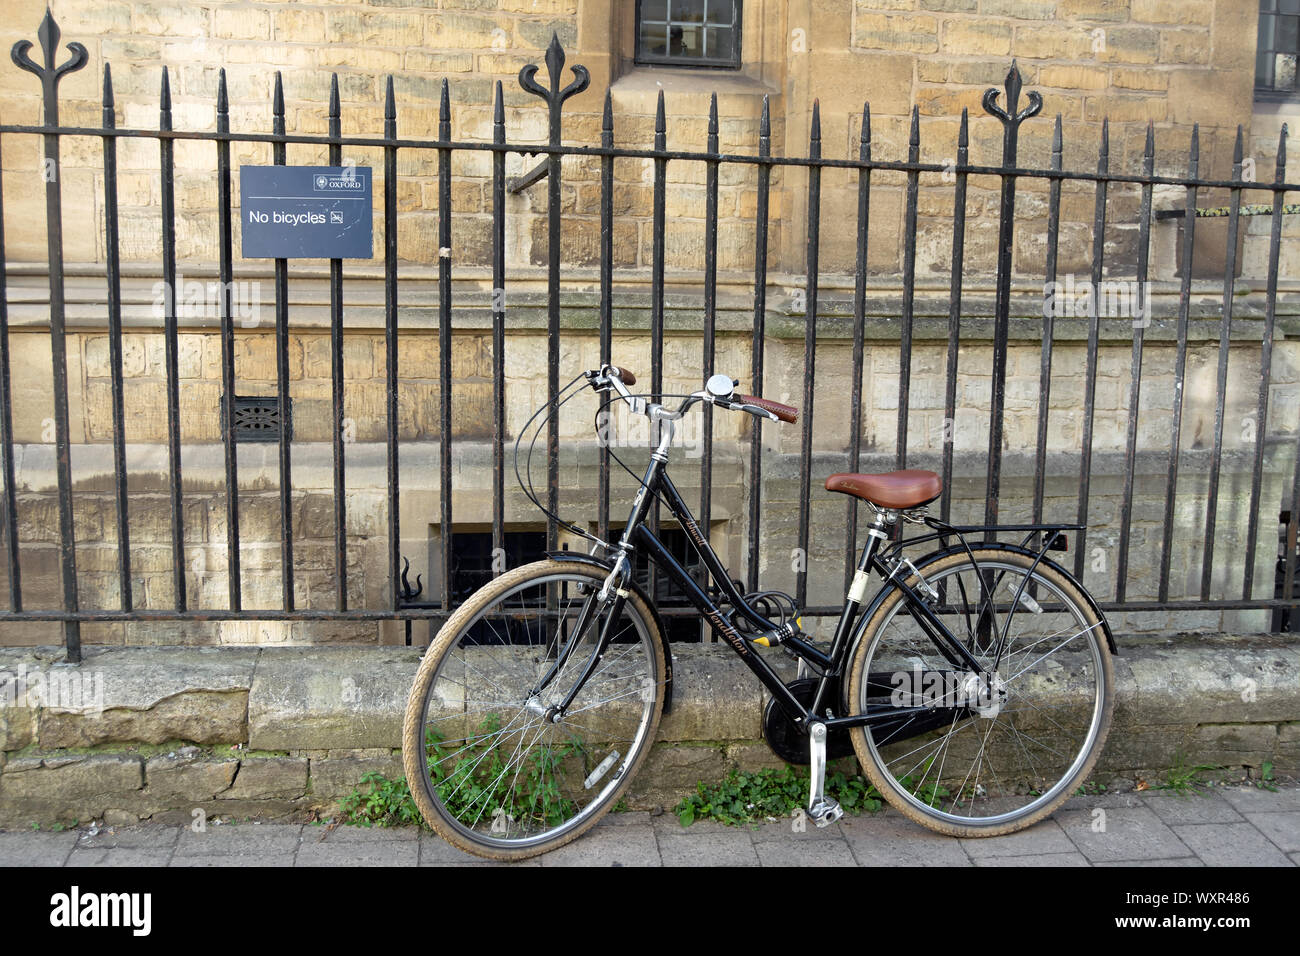 Ein Fahrrad am Geländer neben einer Universität Oxford keine Fahrräder, im merton Lane, Oxford, England Stockfoto